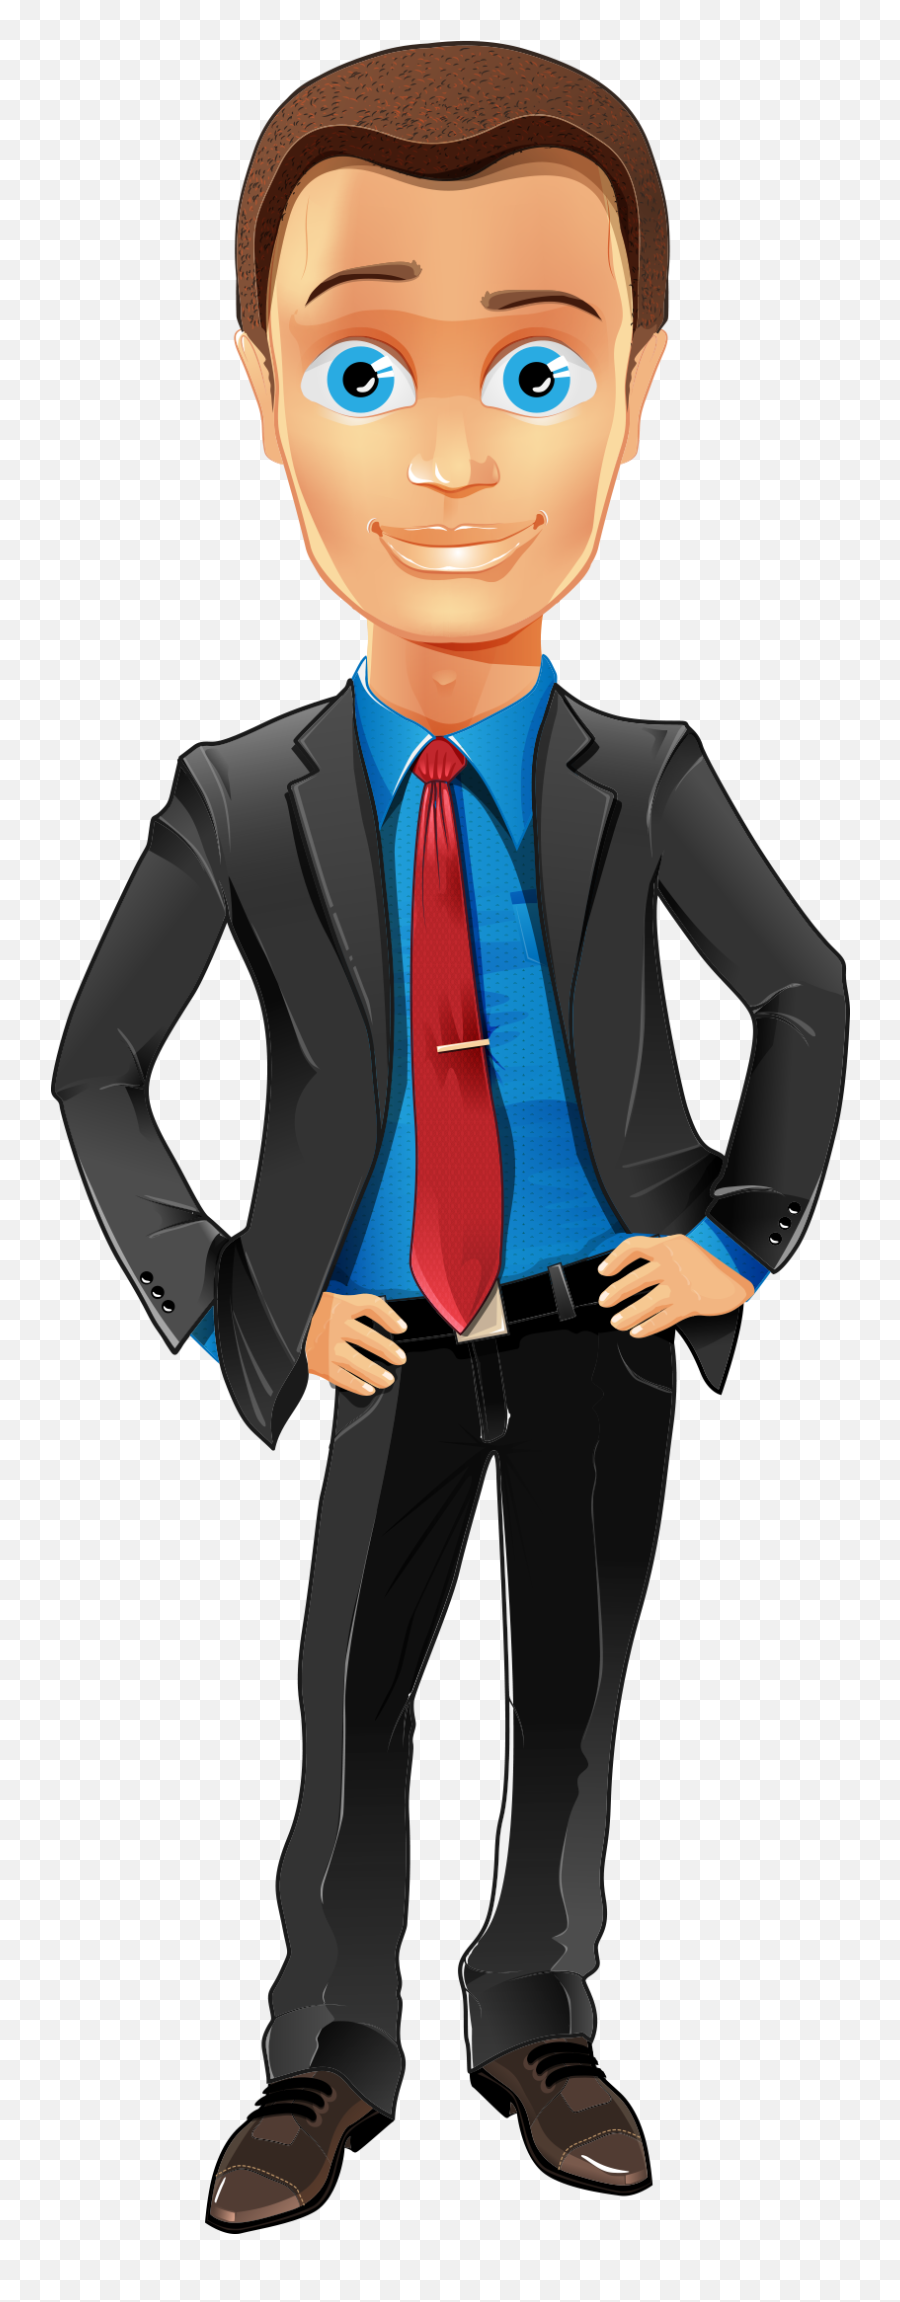 Man Cartoon Character Illustration - Cartoon Character Man Cartoon Transparent Background Png,Business Man Png